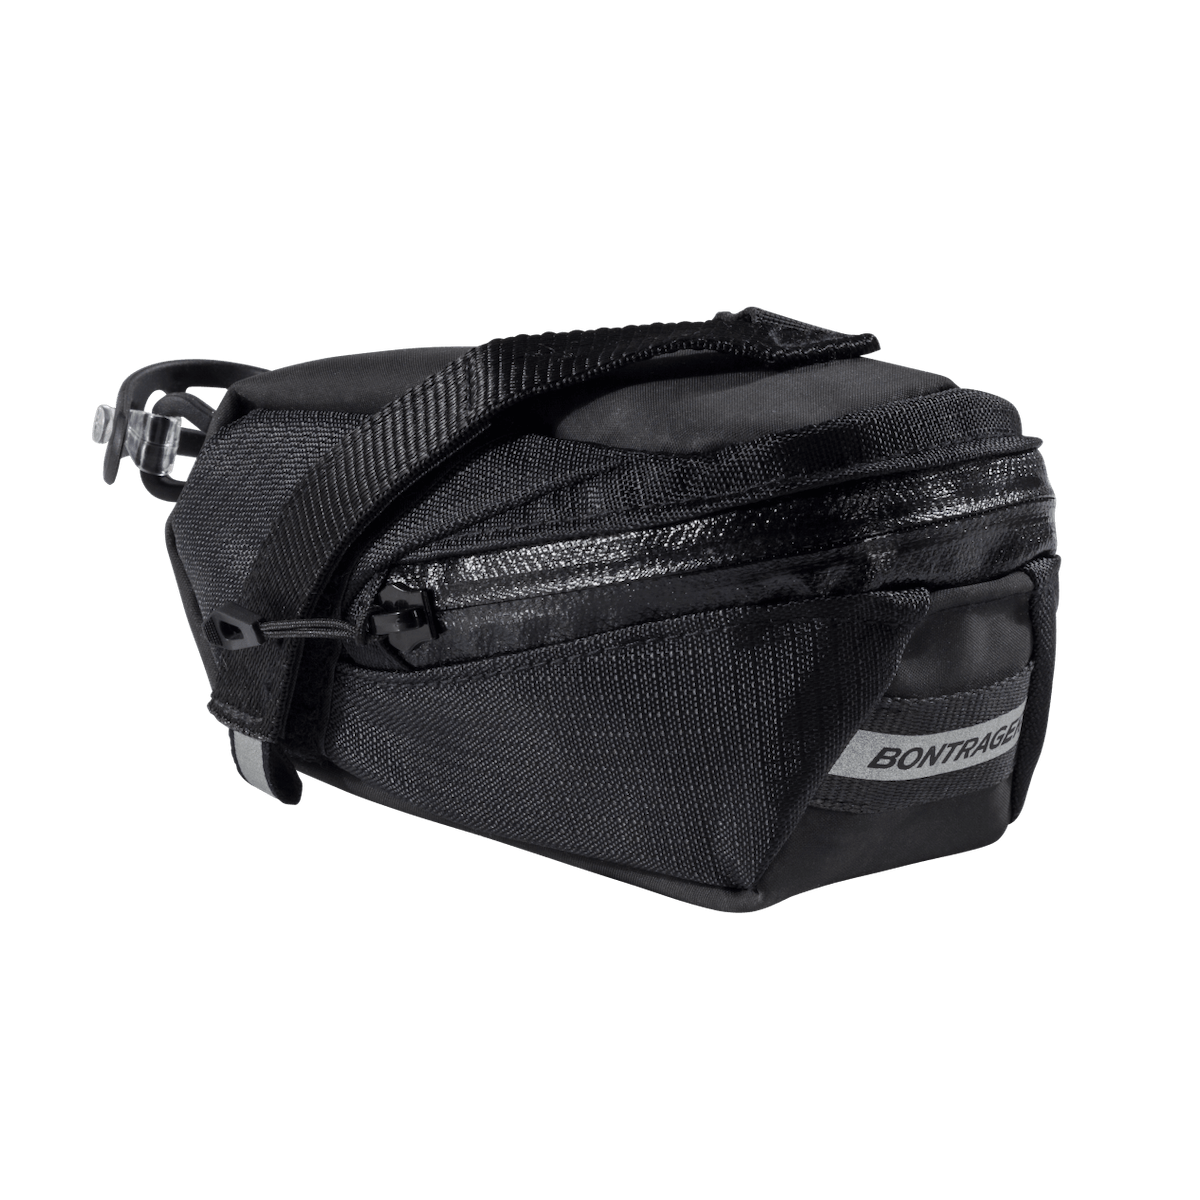 BONTRAGER ELITE SEAT PACK SMALL bag - black